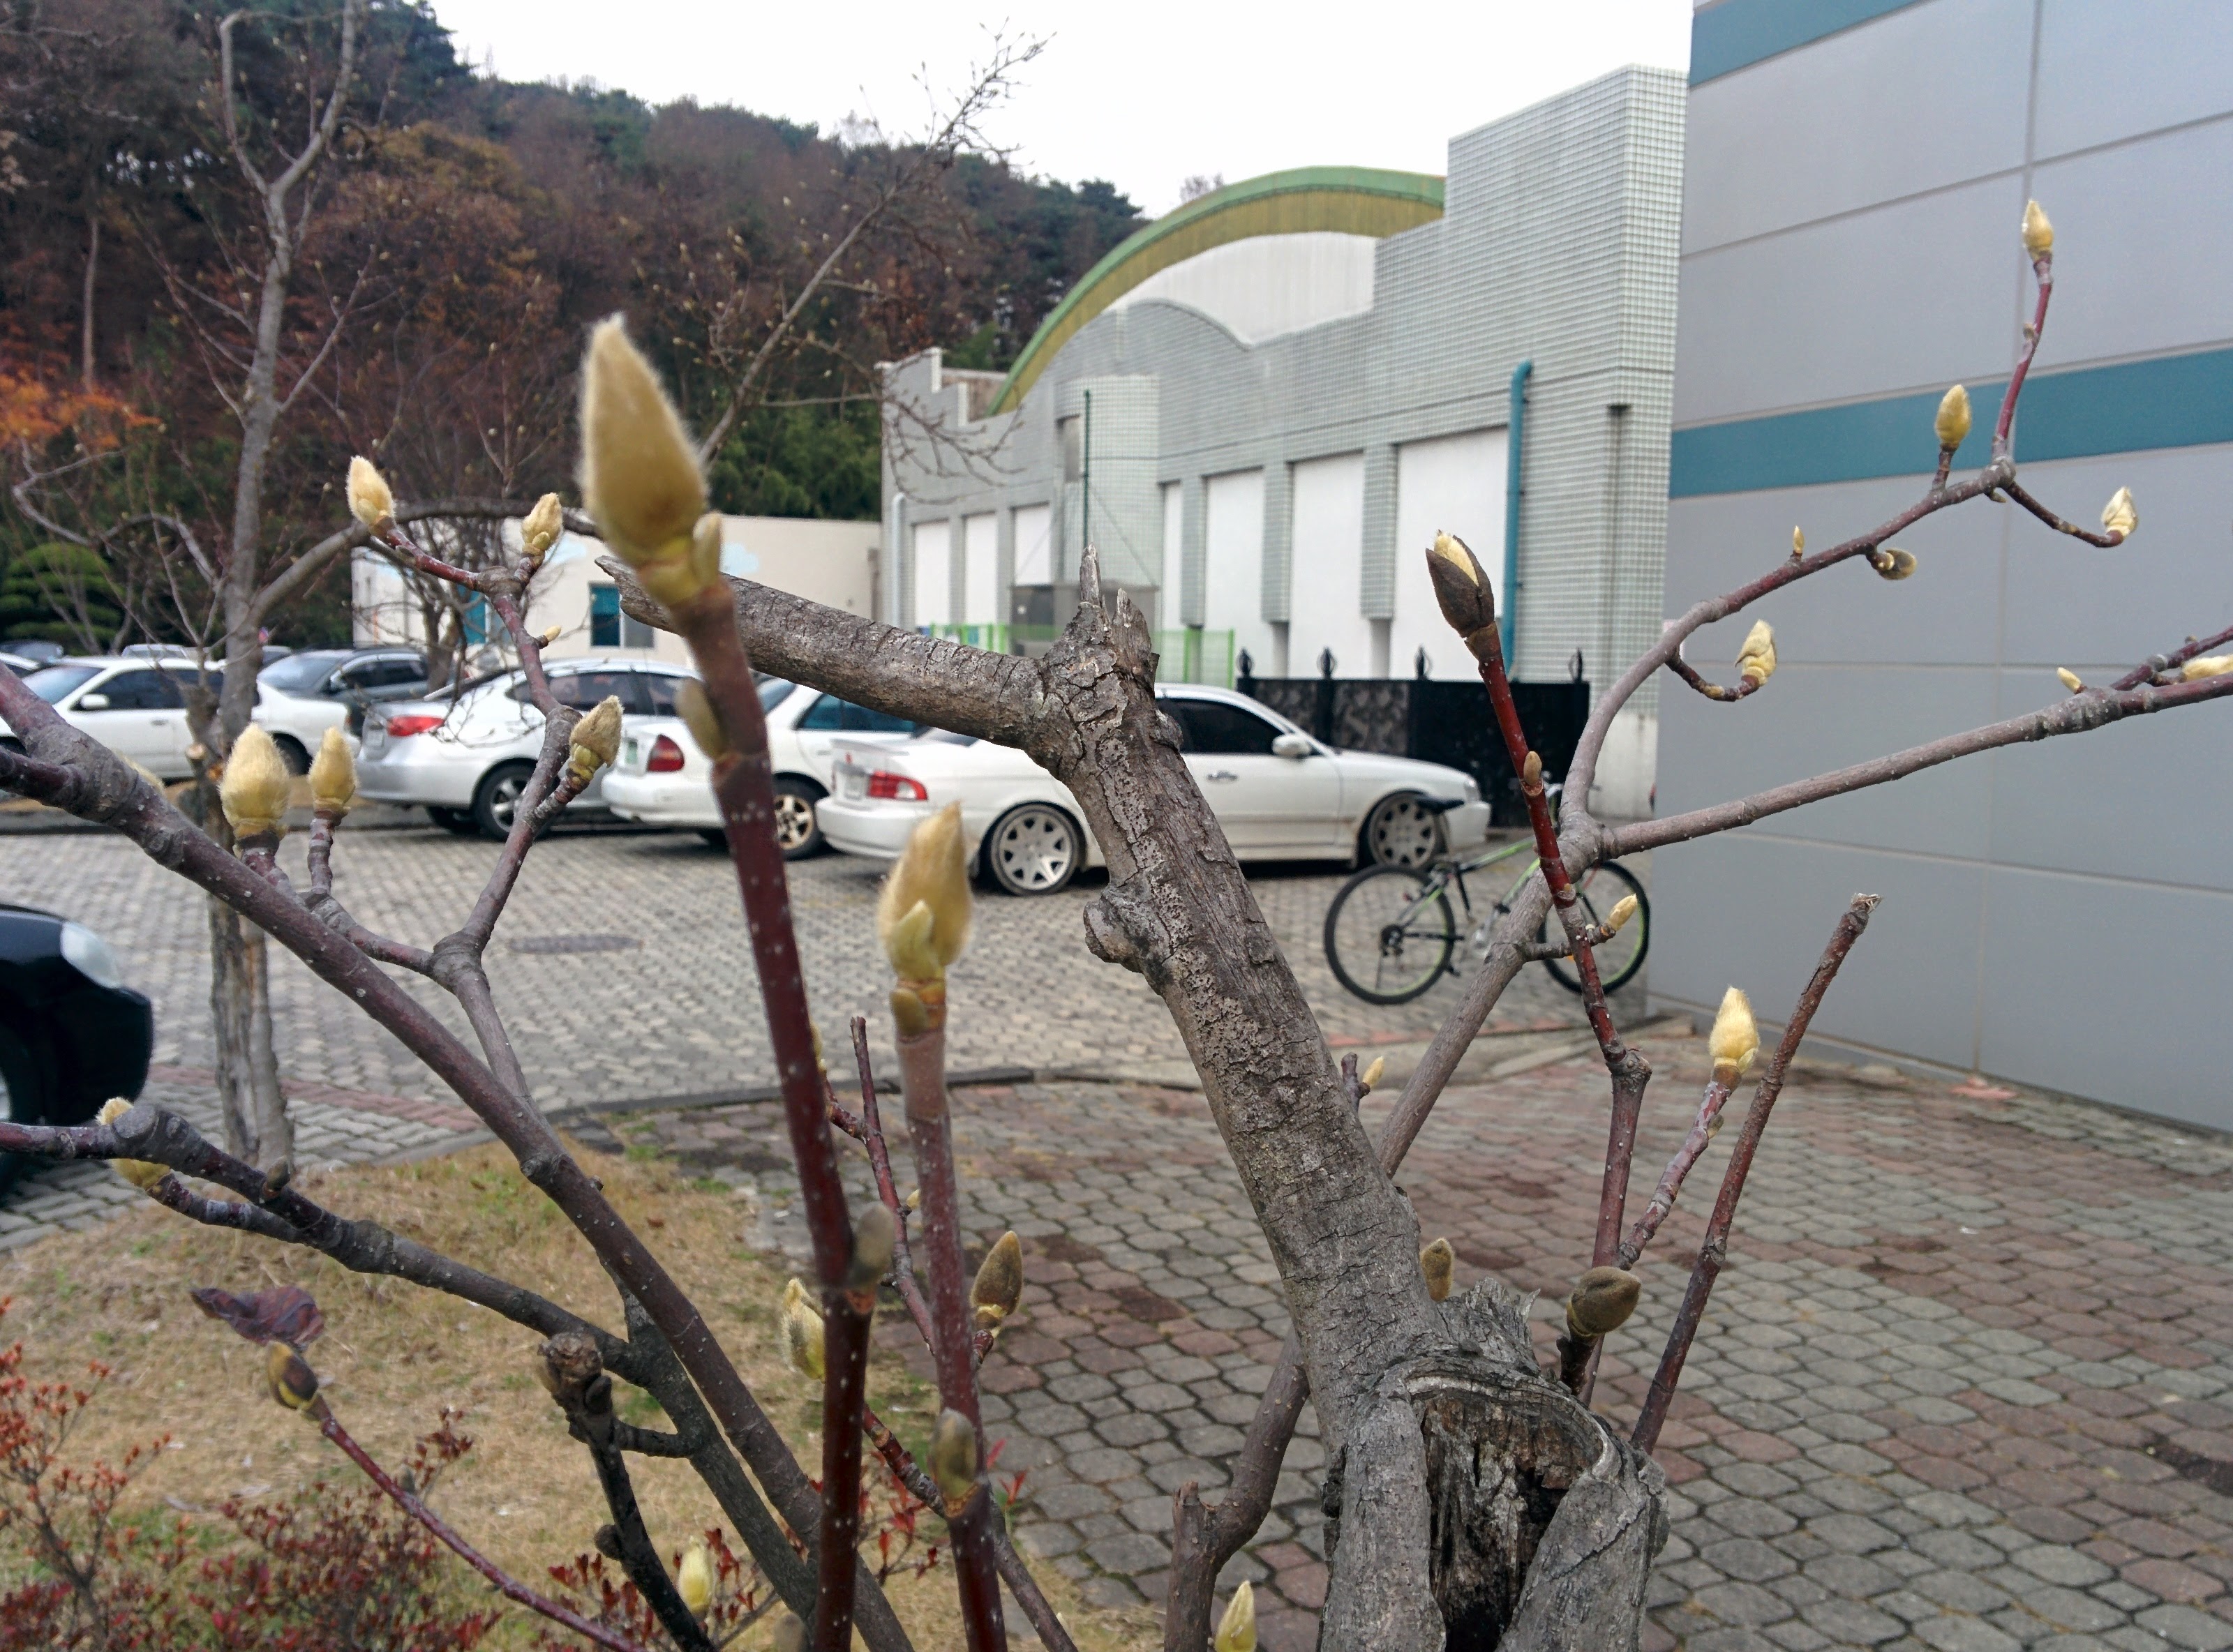 IMG_20151127_121208.jpg 다음 봄을 기다리는 목련나무의 꽃봉오리